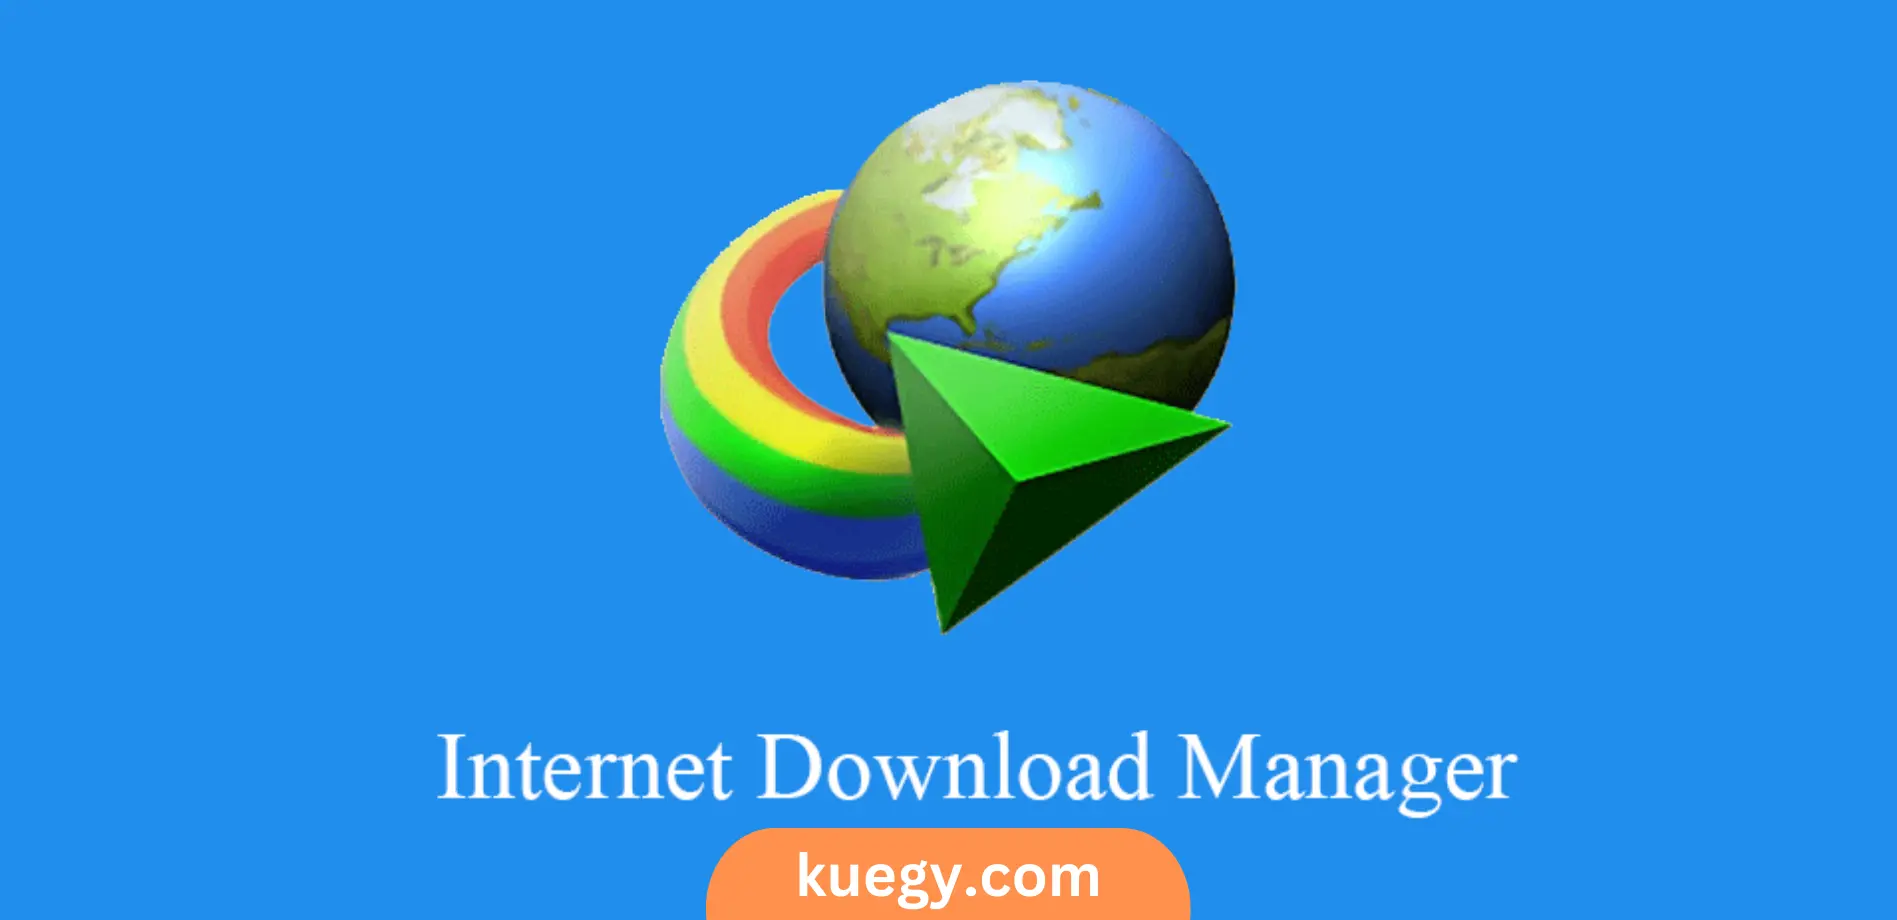 تحميل برنامج internet download manager كامل بالكراك والسيريال مجانا